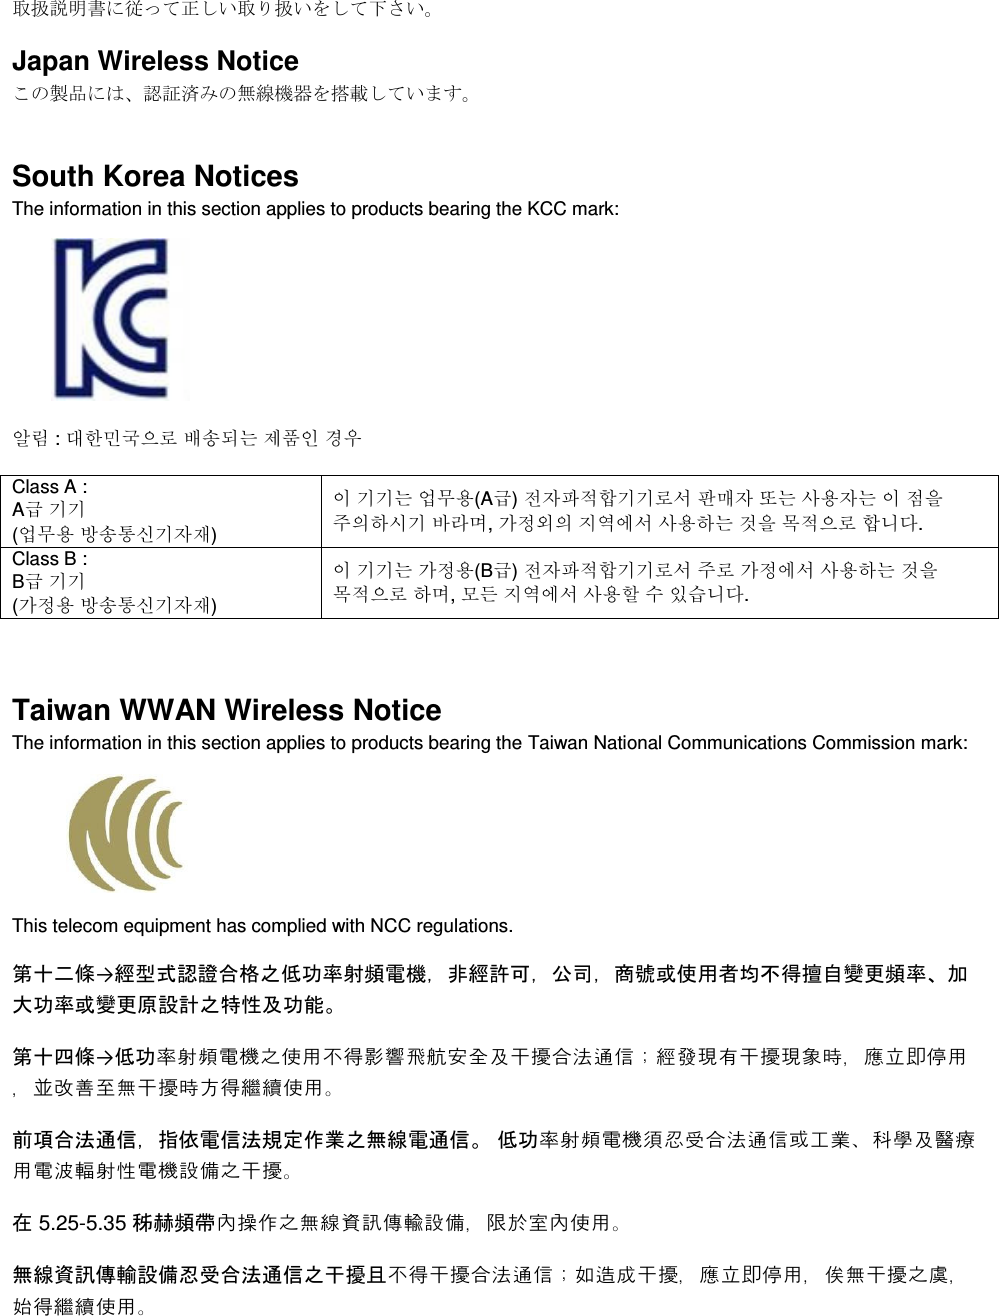  取扱説明書に従って正しい取り扱いをして下さい。 Japan Wireless Notice この製品には、認証済みの無線機器を搭載しています。 South Korea Notices  The information in this section applies to products bearing the KCC mark:     알림 : 대한민국으로 배송되는 제품인 경우 Class A :  A급 기기 (업무용 방송통신기자재) 이 기기는 업무용(A급) 전자파적합기기로서 판매자 또는 사용자는 이 점을 주의하시기 바라며, 가정외의 지역에서 사용하는 것을 목적으로 합니다. Class B :  B급 기기 (가정용 방송통신기자재) 이 기기는 가정용(B급) 전자파적합기기로서 주로 가정에서 사용하는 것을 목적으로 하며, 모든 지역에서 사용할 수 있습니다.  Taiwan WWAN Wireless Notice  The information in this section applies to products bearing the Taiwan National Communications Commission mark:    This telecom equipment has complied with NCC regulations.  第十二條→經型式認證合格之低功率射頻電機，非經許可，公司，商號或使用者均不得擅自變更頻率、加大功率或變更原設計之特性及功能。 第十四條→低功率射頻電機之使用不得影響飛航安全及干擾合法通信；經發現有干擾現象時，應立即停用，並改善至無干擾時方得繼續使用。 前項合法通信，指依電信法規定作業之無線電通信。 低功率射頻電機須忍受合法通信或工業、科學及醫療用電波輻射性電機設備之干擾。 在 5.25-5.35 秭赫頻帶內操作之無線資訊傳輸設備，限於室內使用。 無線資訊傳輸設備忍受合法通信之干擾且不得干擾合法通信；如造成干擾，應立即停用，俟無干擾之虞，始得繼續使用。 